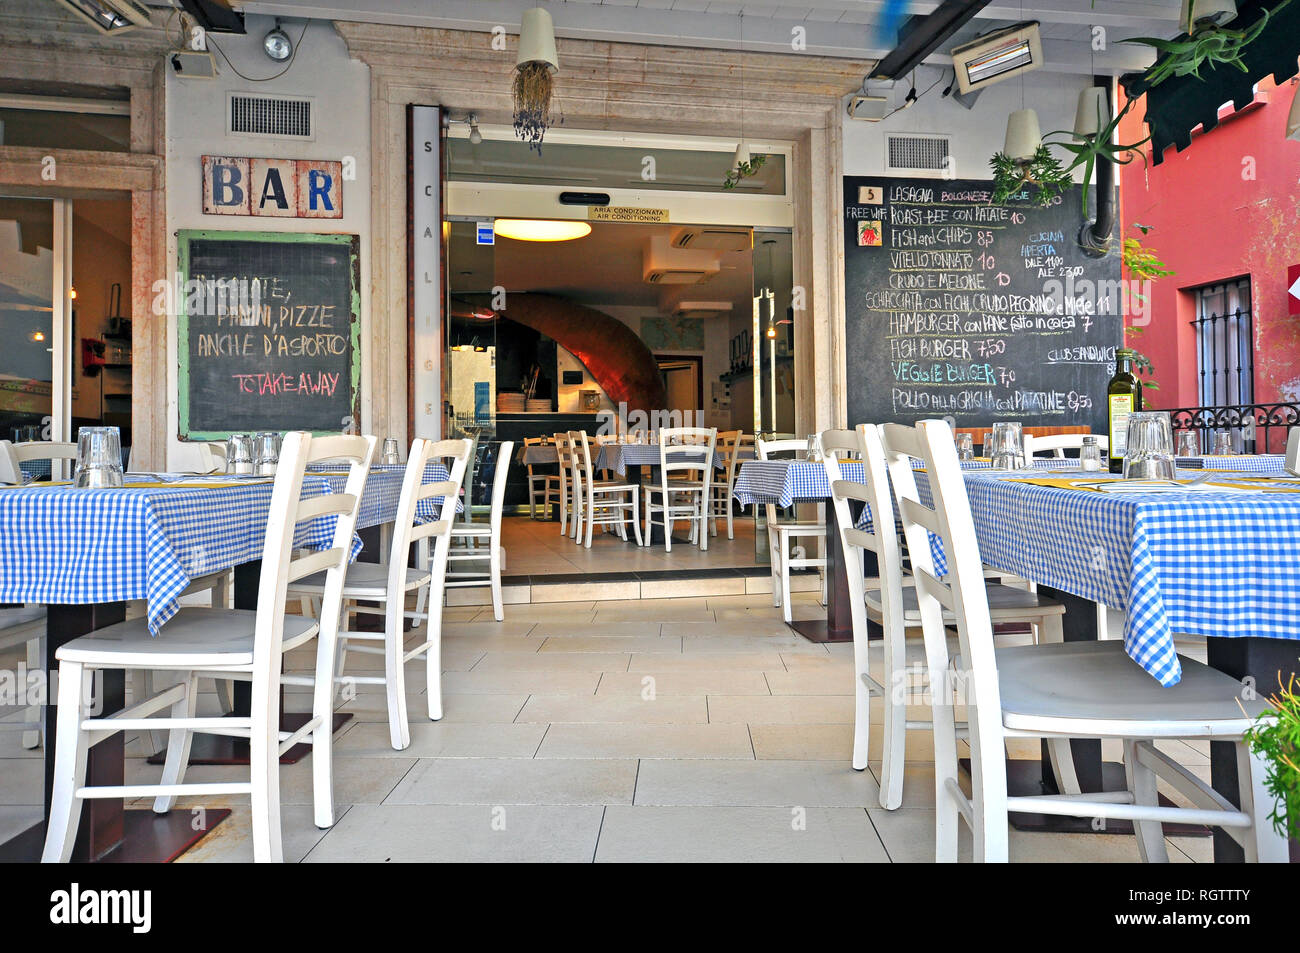 SIRMIONE, ITALIEN - Juli 14: Tische und Stühle von einem italienischen Restaurant in Sirmione, Italien am 14. Juli 2014. Sirmione ist ein Resort am Gardasee im Norden Stockfoto